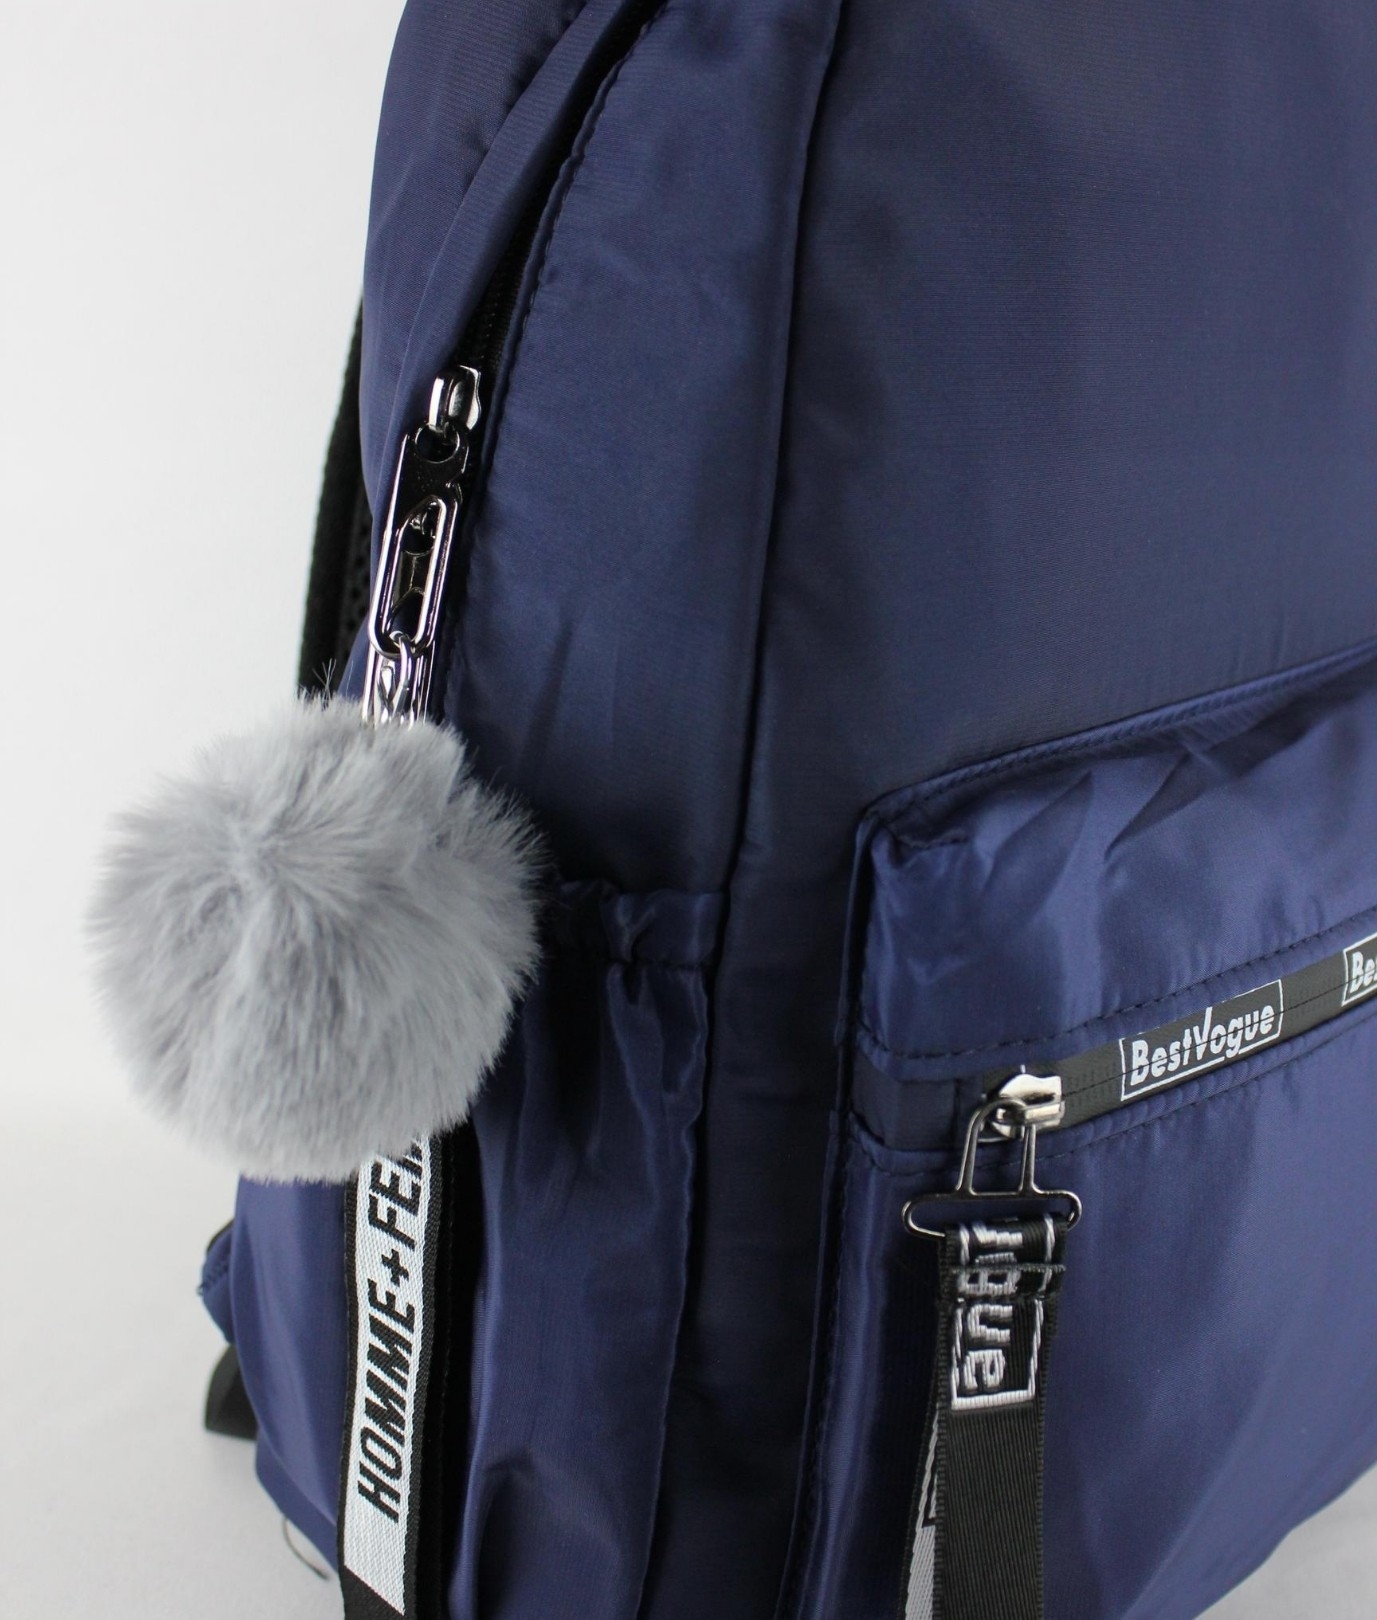 Backpack Vogue - Navy Blue